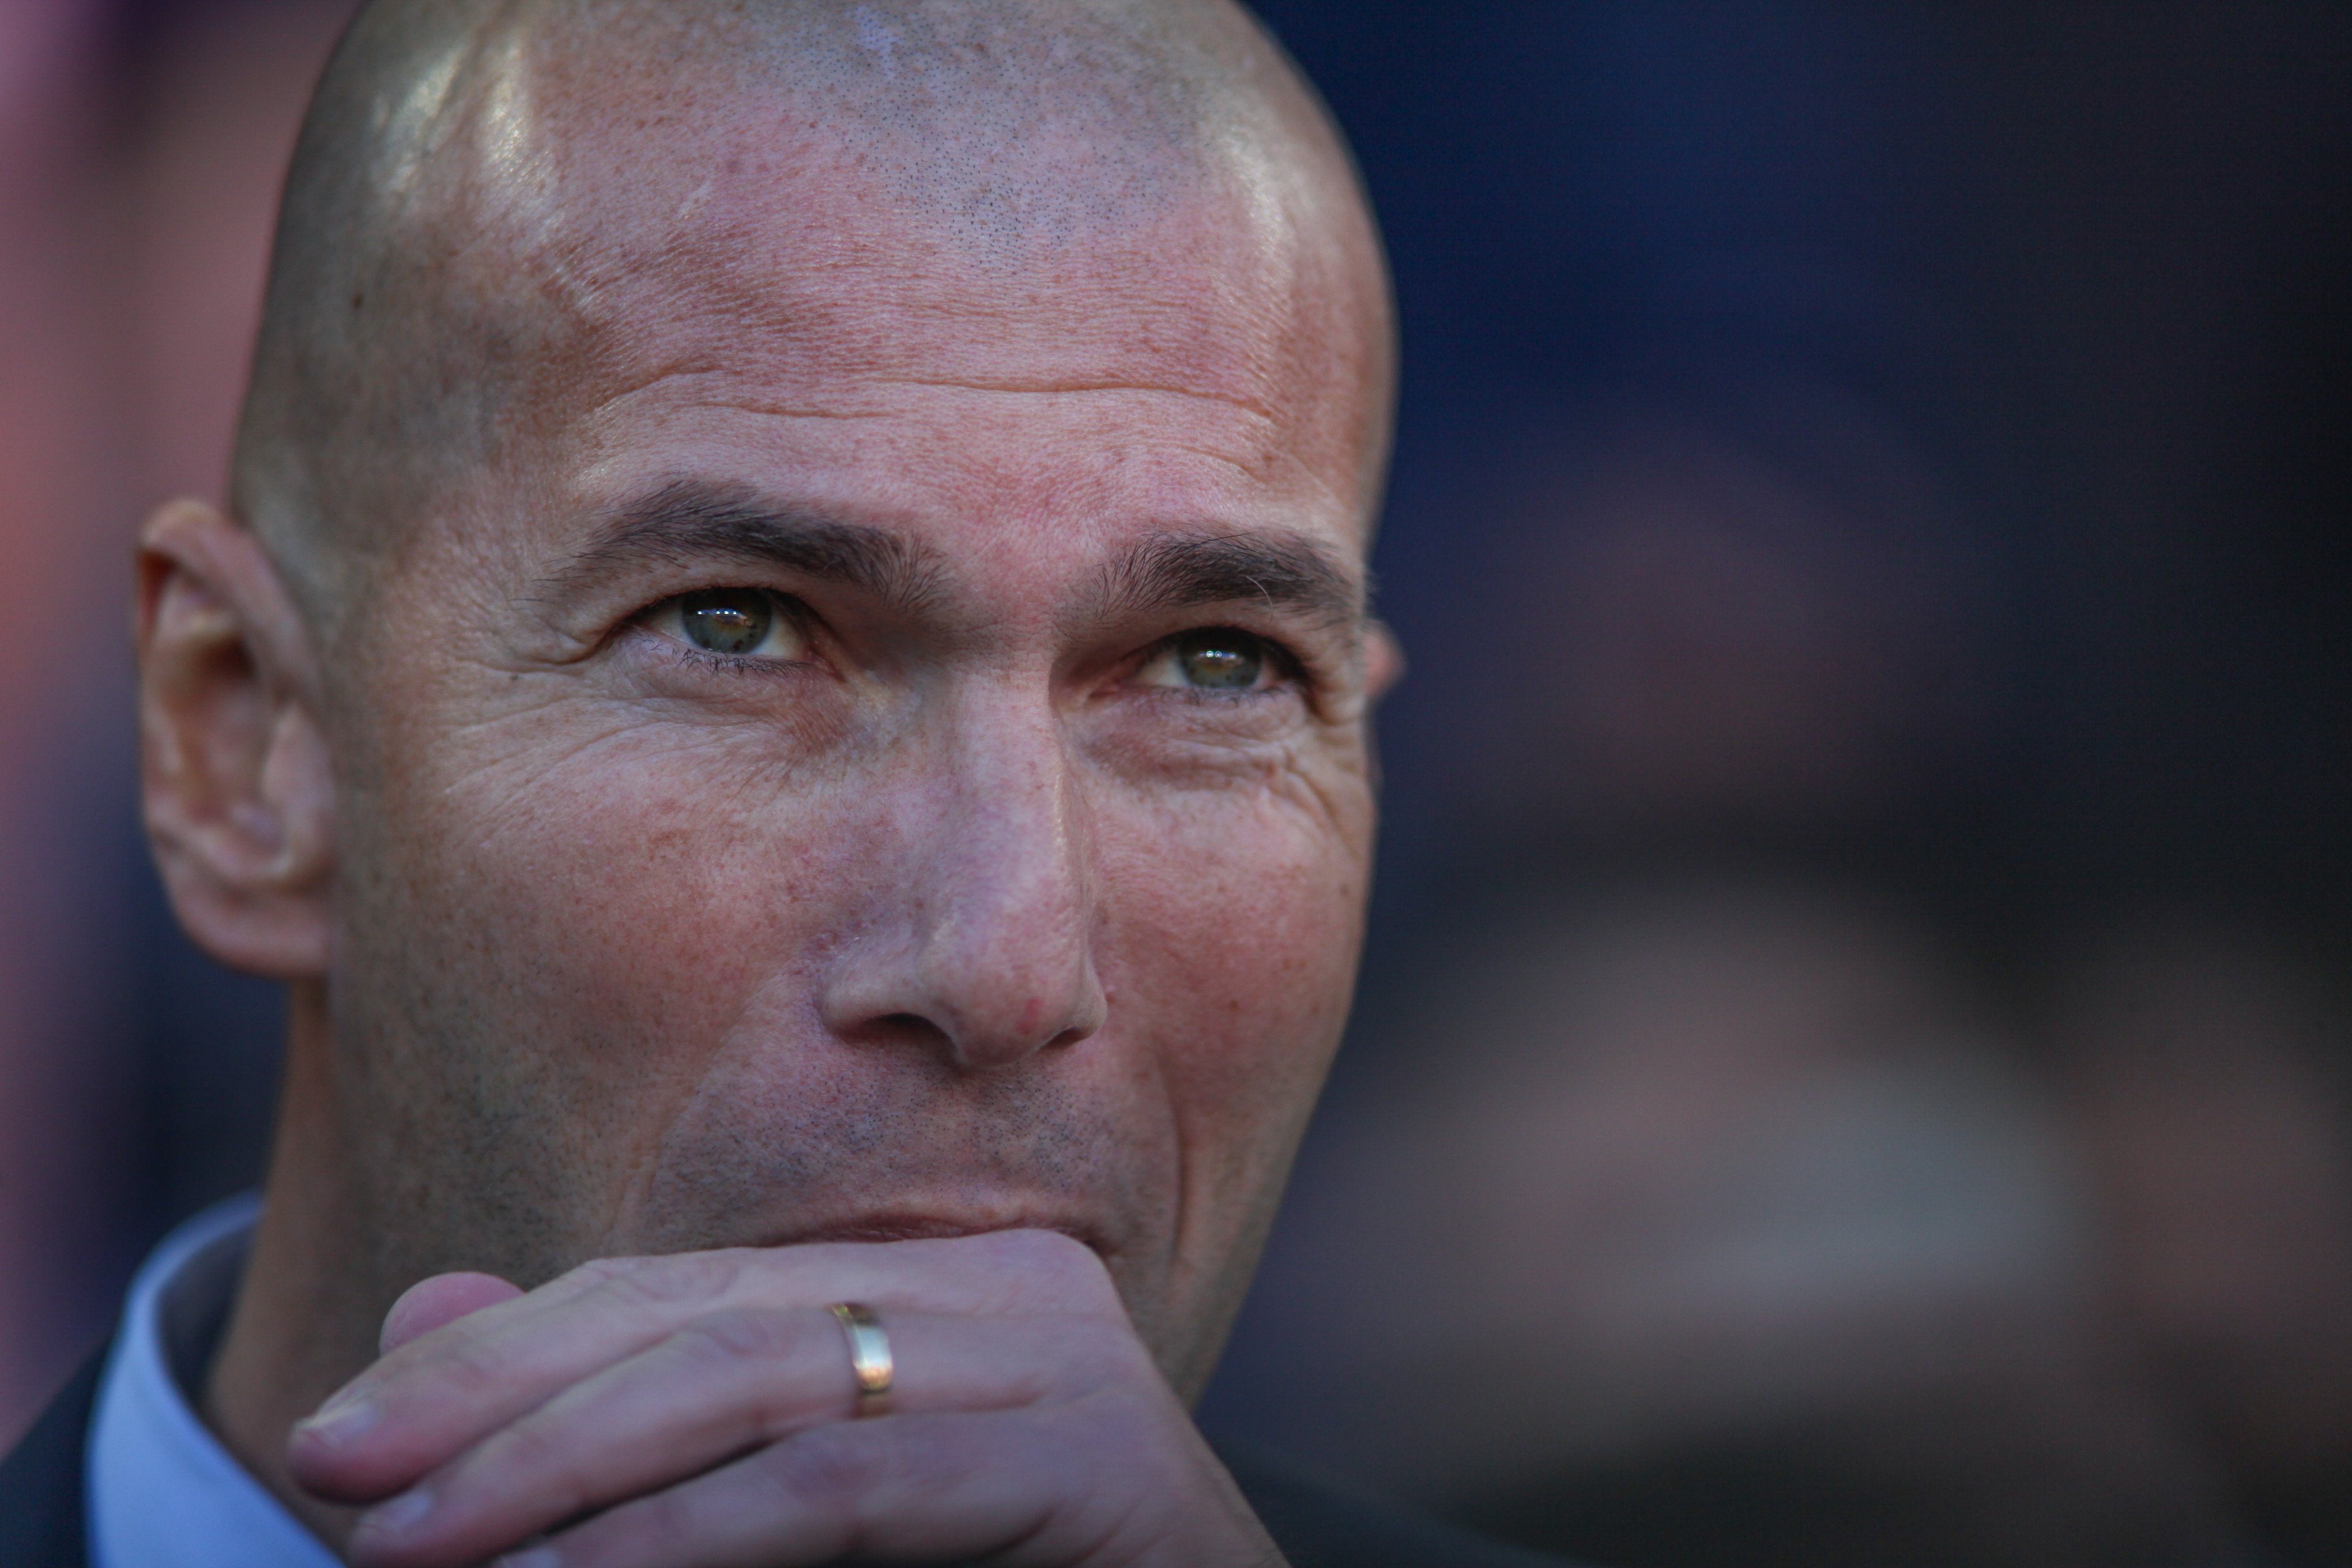 Zidane respon a les acusacions de Piqué: "Podria pensar el mateix al revés"